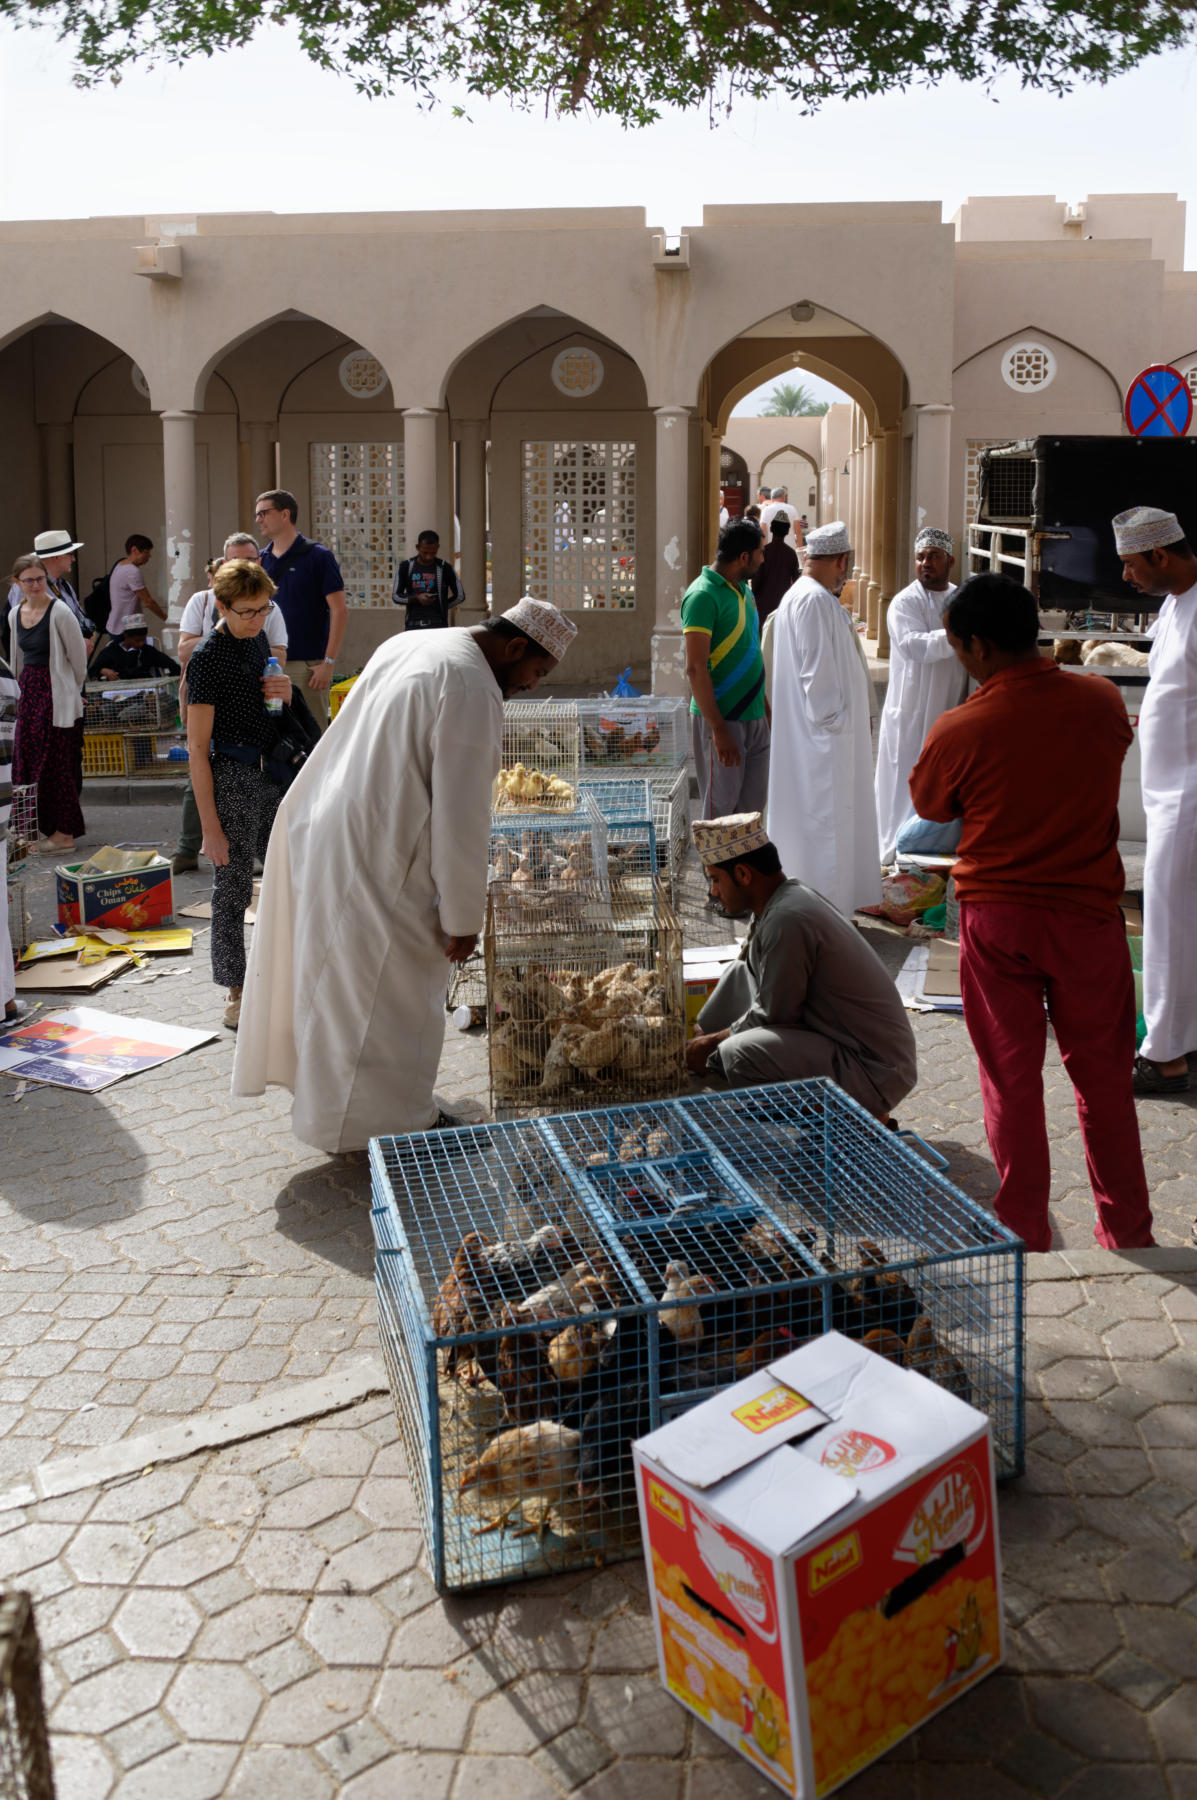 Buying and Selling animals, Nizwa Souq, Oman